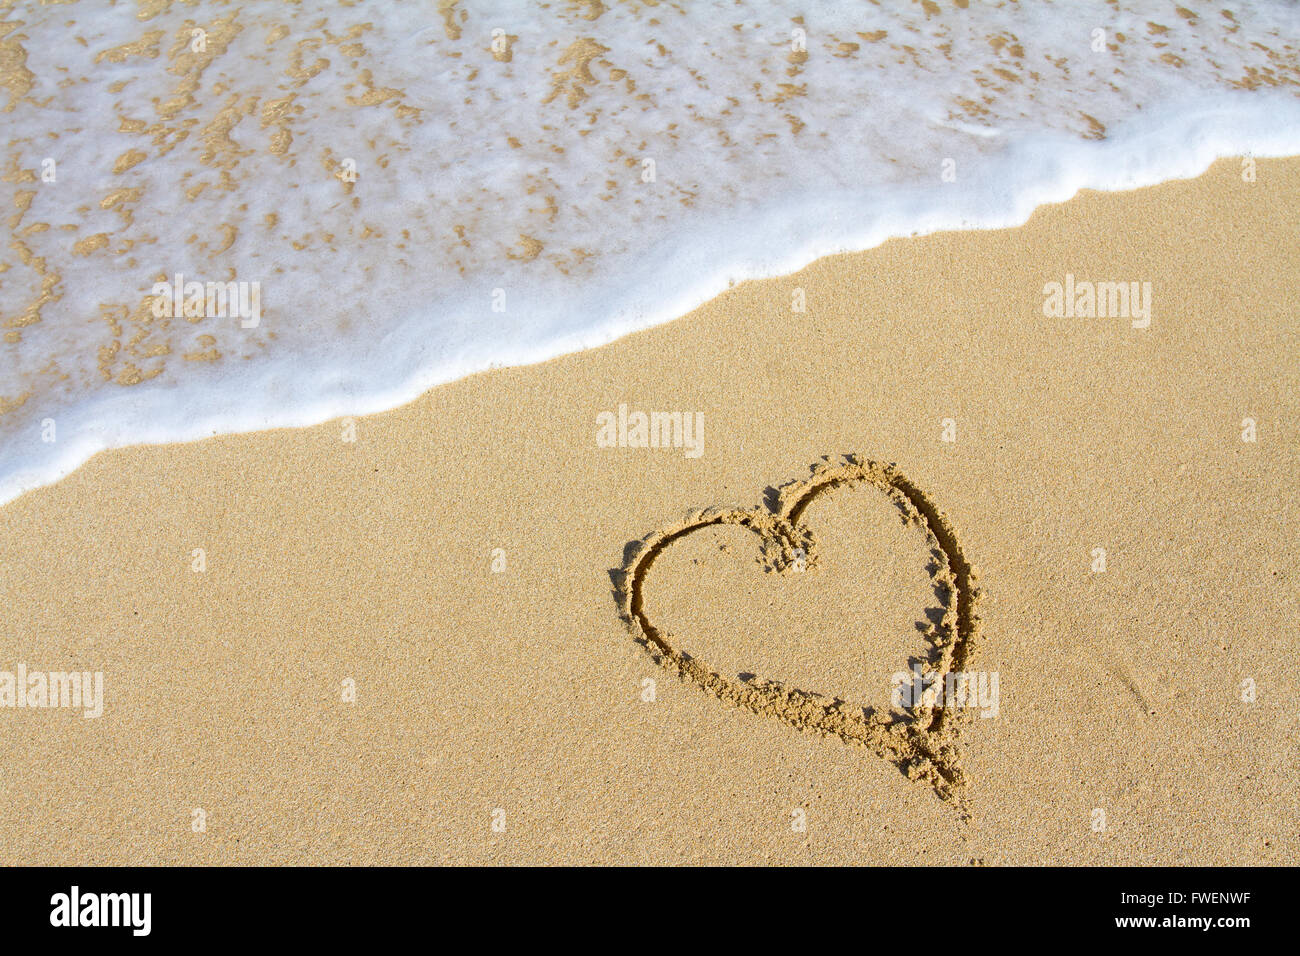 Un cuore è disegnato nella sabbia sulla spiaggia delle Hawaii che mostra un'immagine di sabbia bianca, acqua, le onde e il simbolo per l'amore. Questo wou Foto Stock